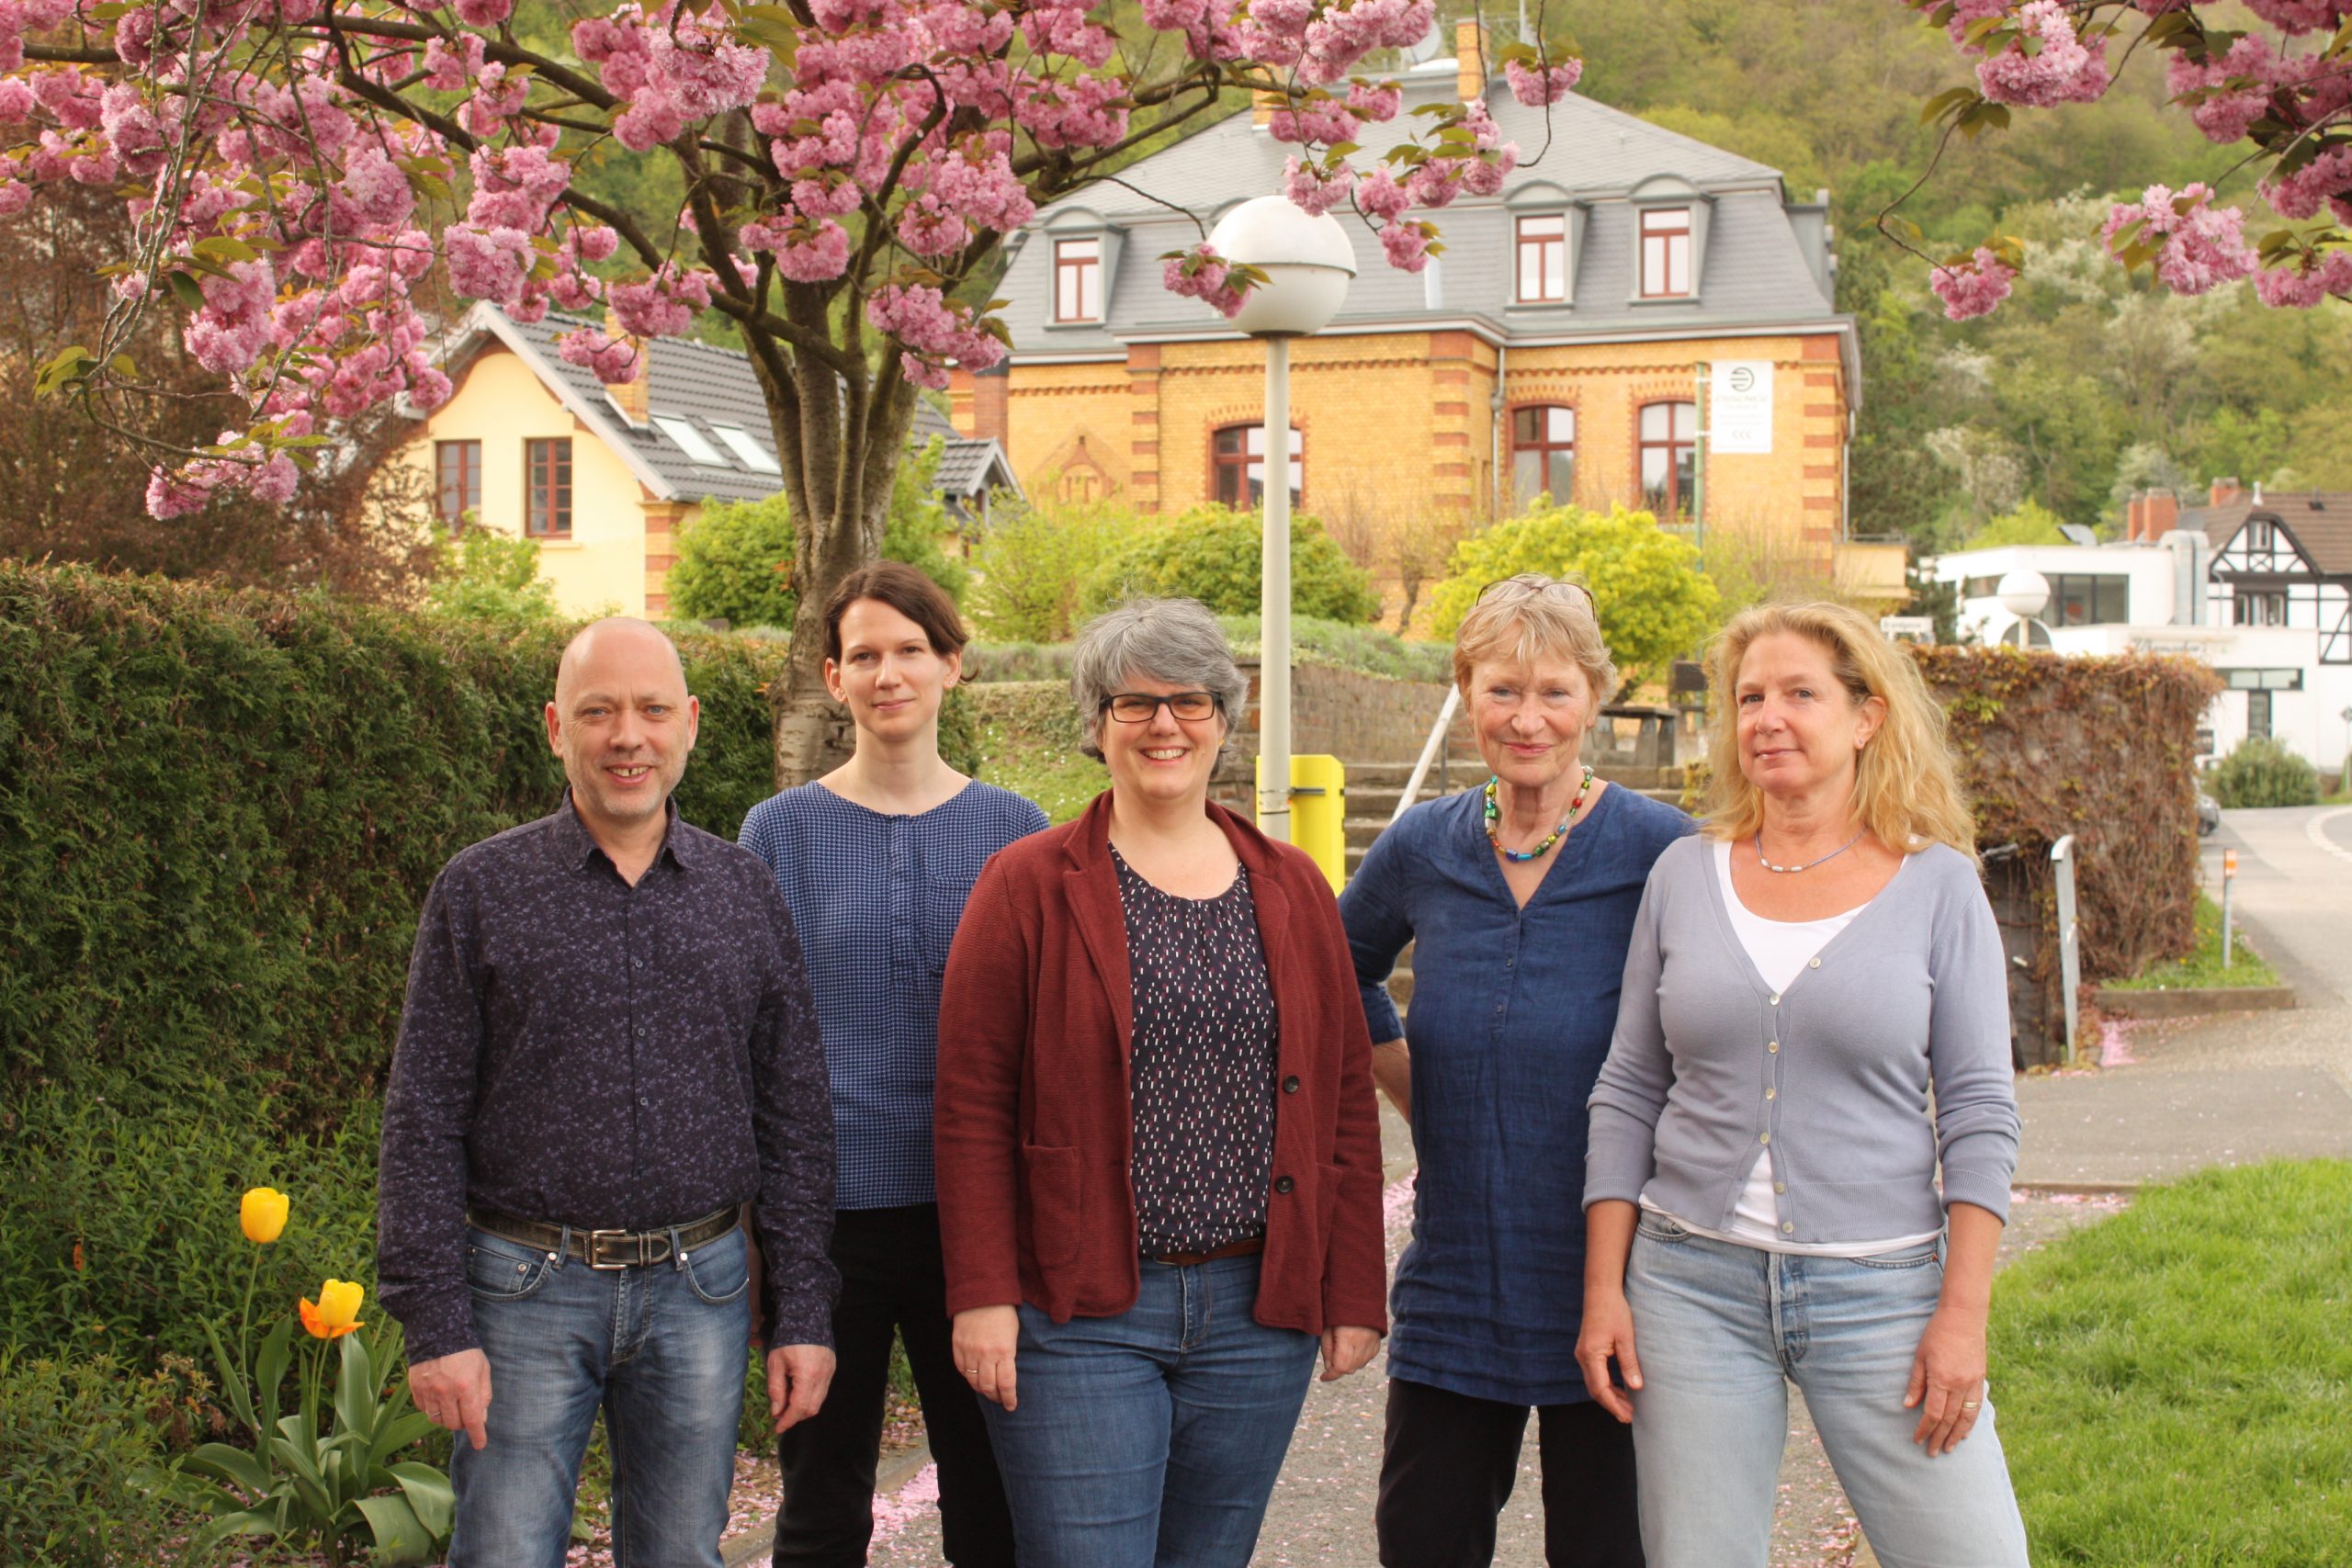 v.l.n.r: Martin Holl, Sabrina Güttes, Iris Loosen, Inge Gerstenberger, Annette Doerpinghaus (Foto: Volker Thehos)